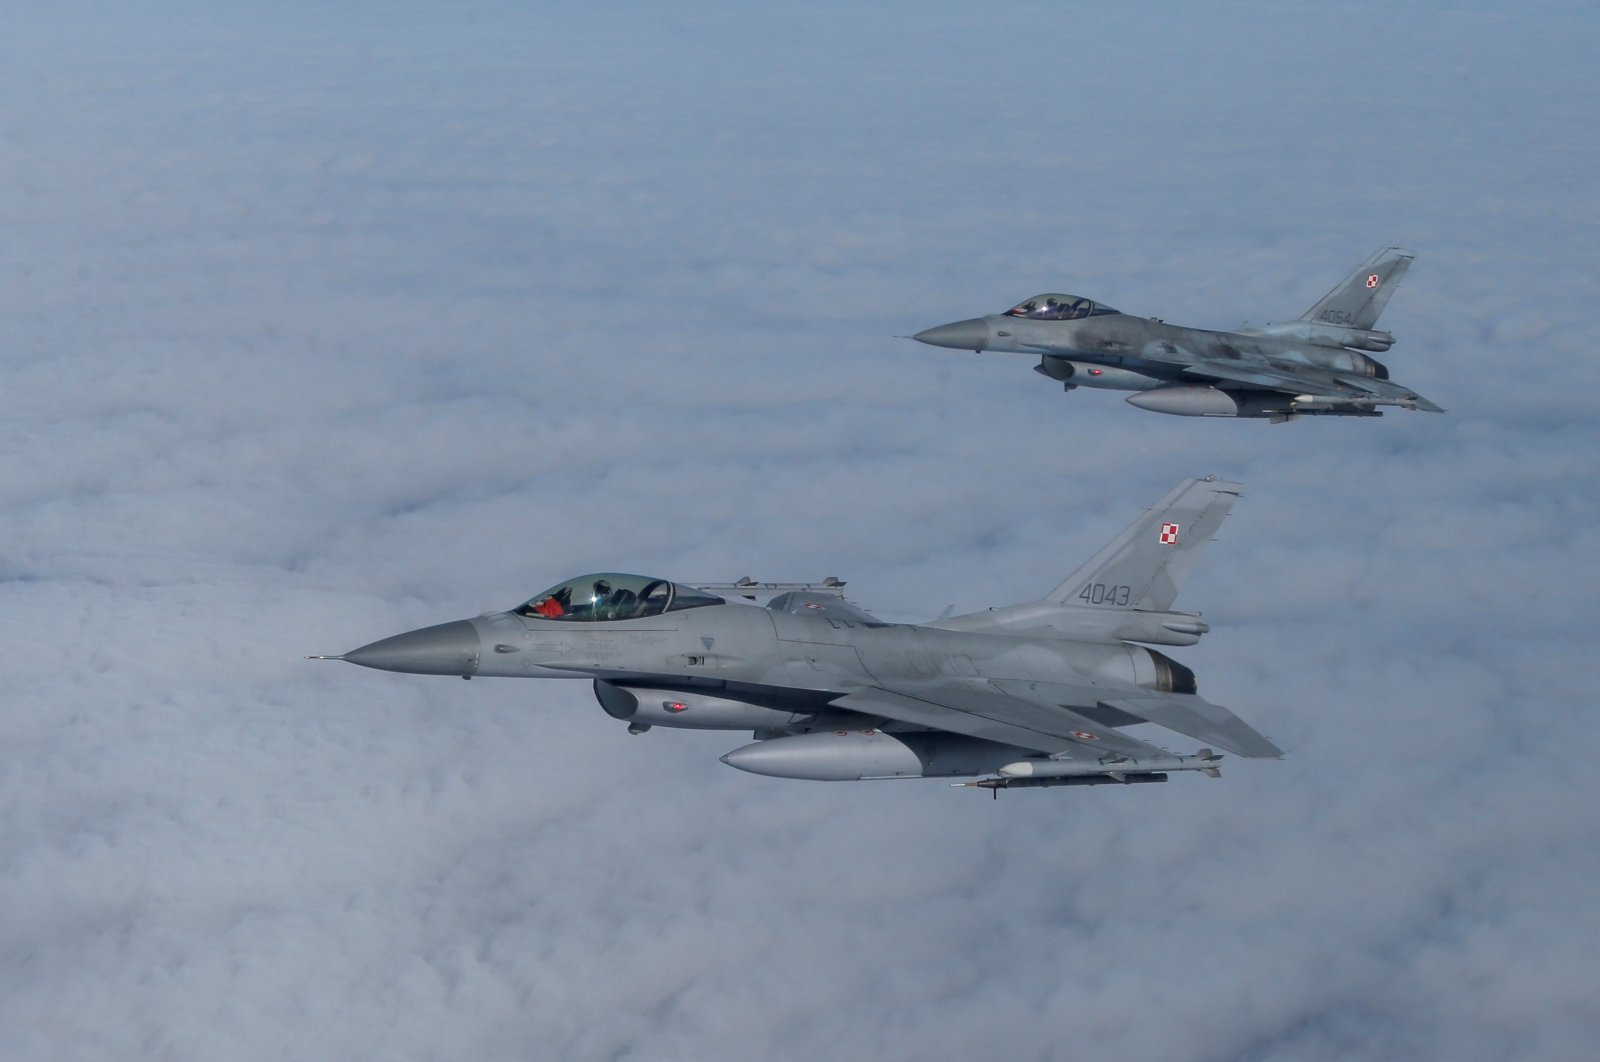 AS percaya Türkiye harus mendapatkan jet F-16: Blinken